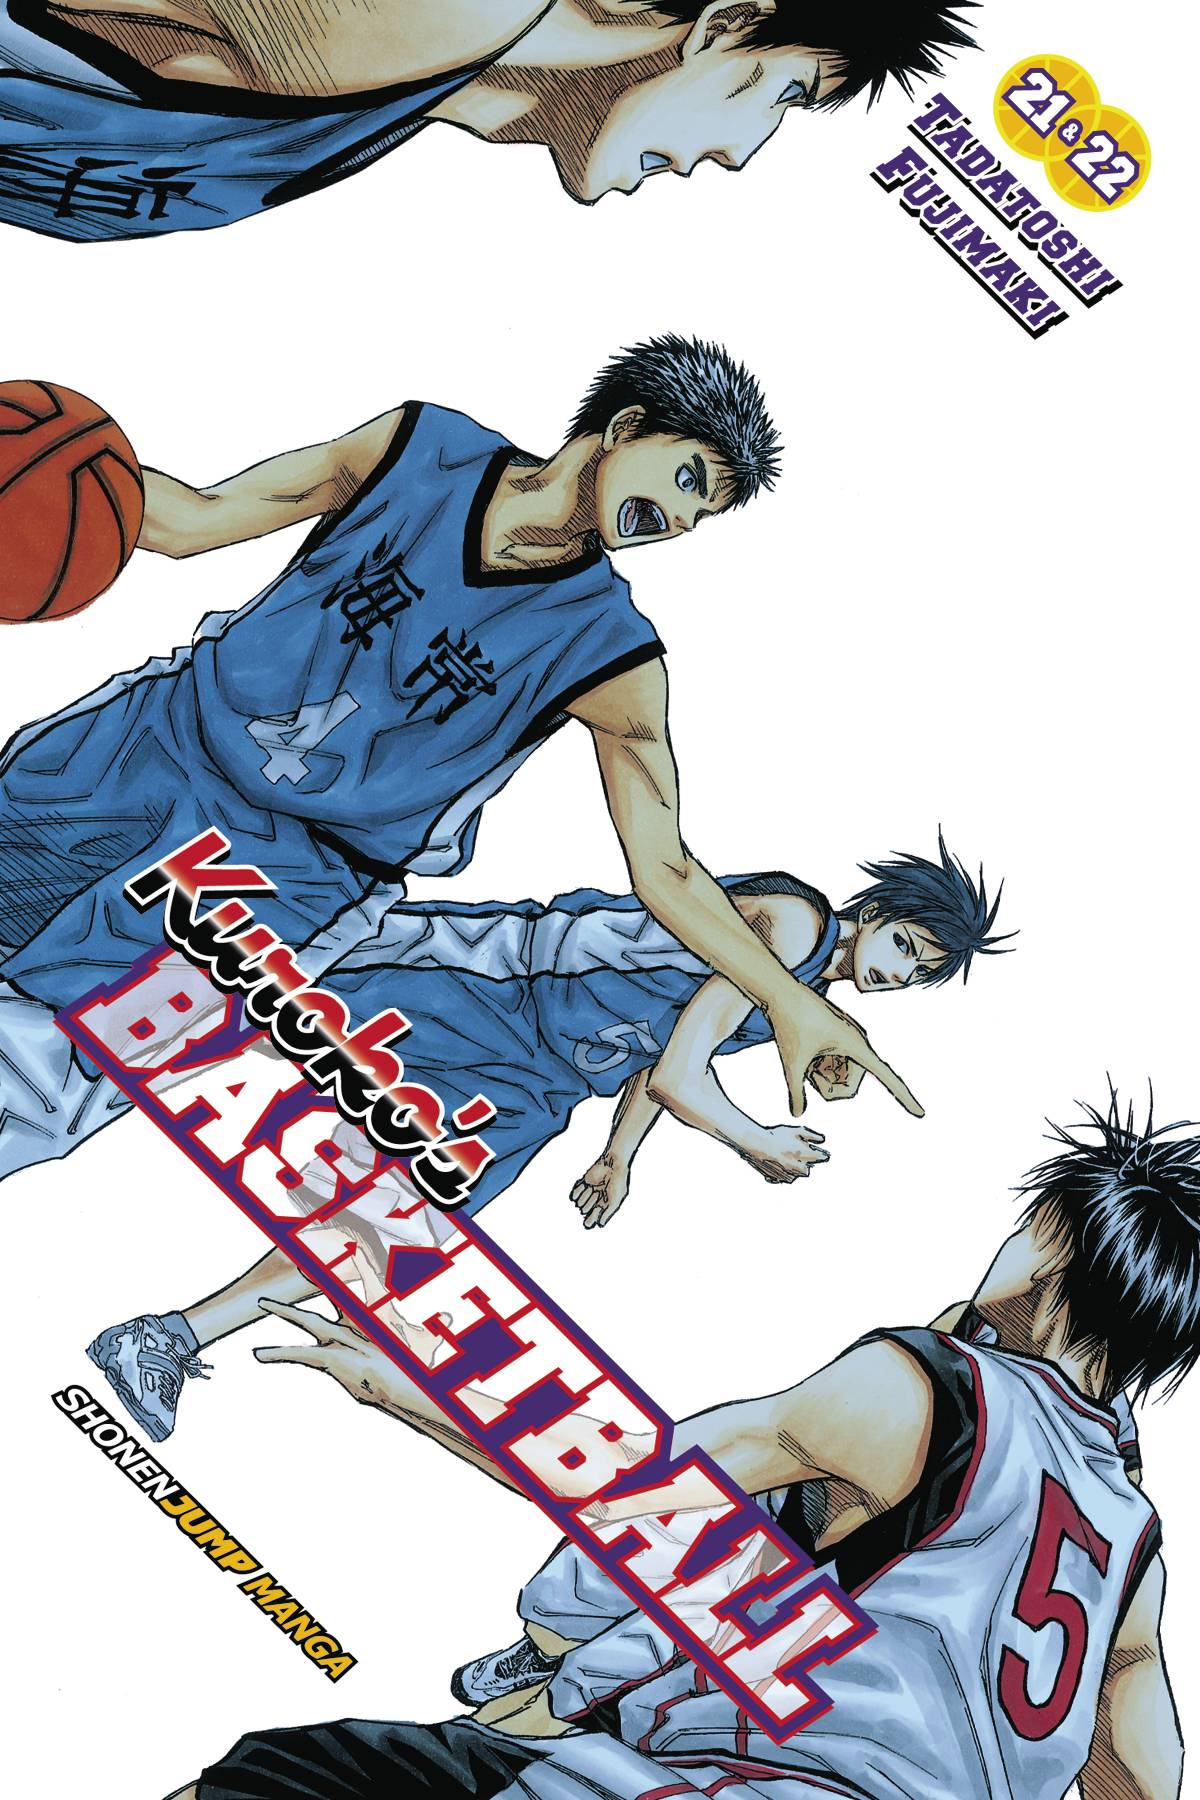 Shounen - Kuroko no Basket by Tadatoshi Fujimaki